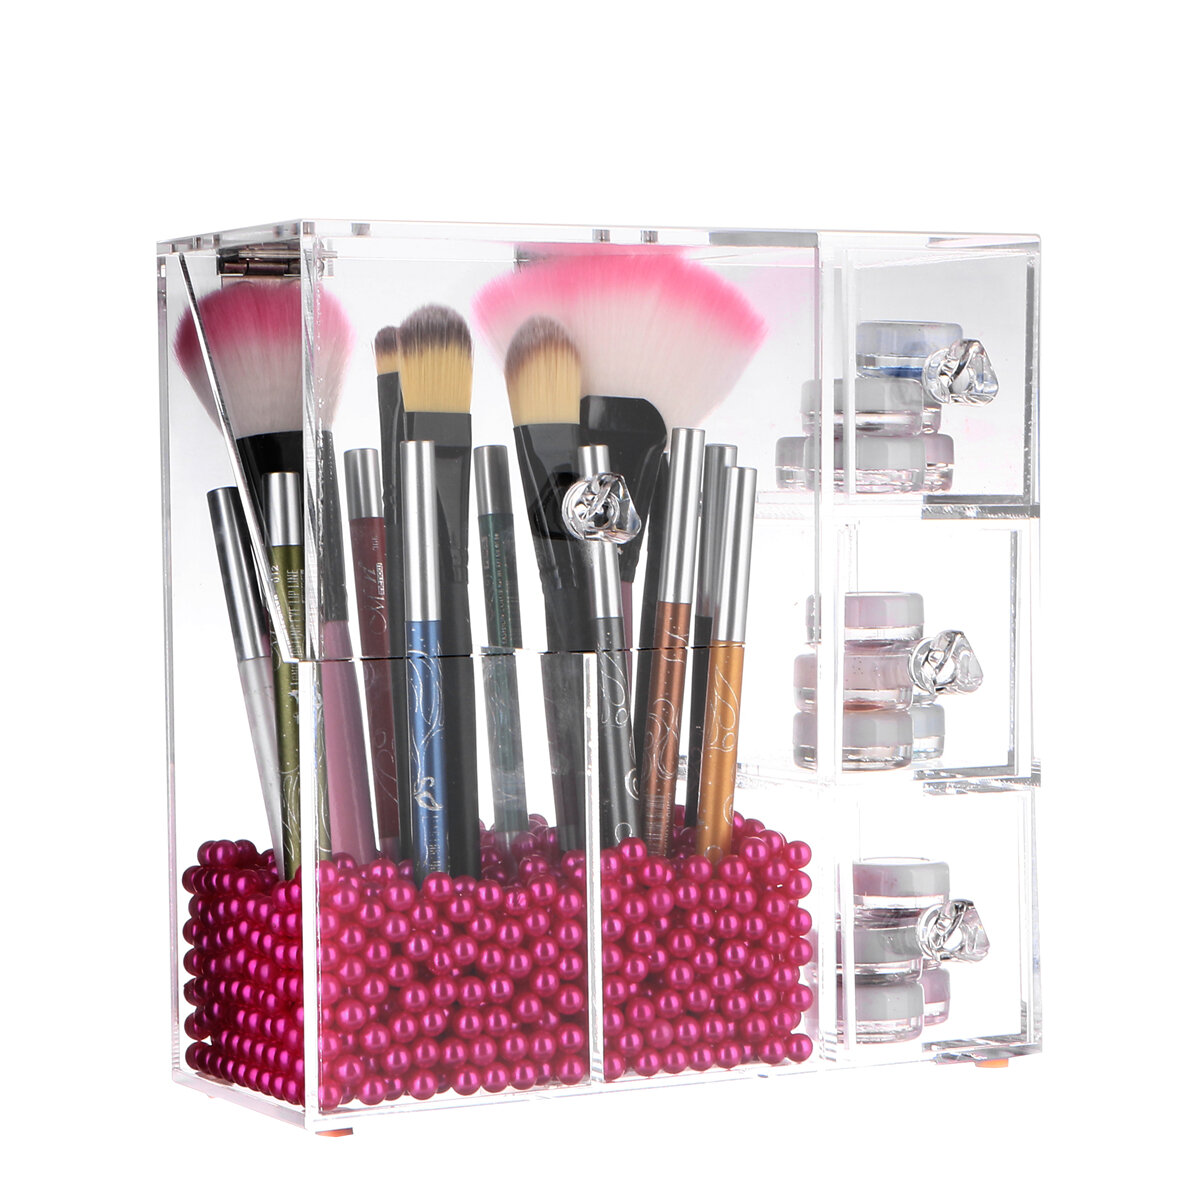 LANGFORTH Lipstick Makeup Acrylic Organizer Makeup Brush Holder